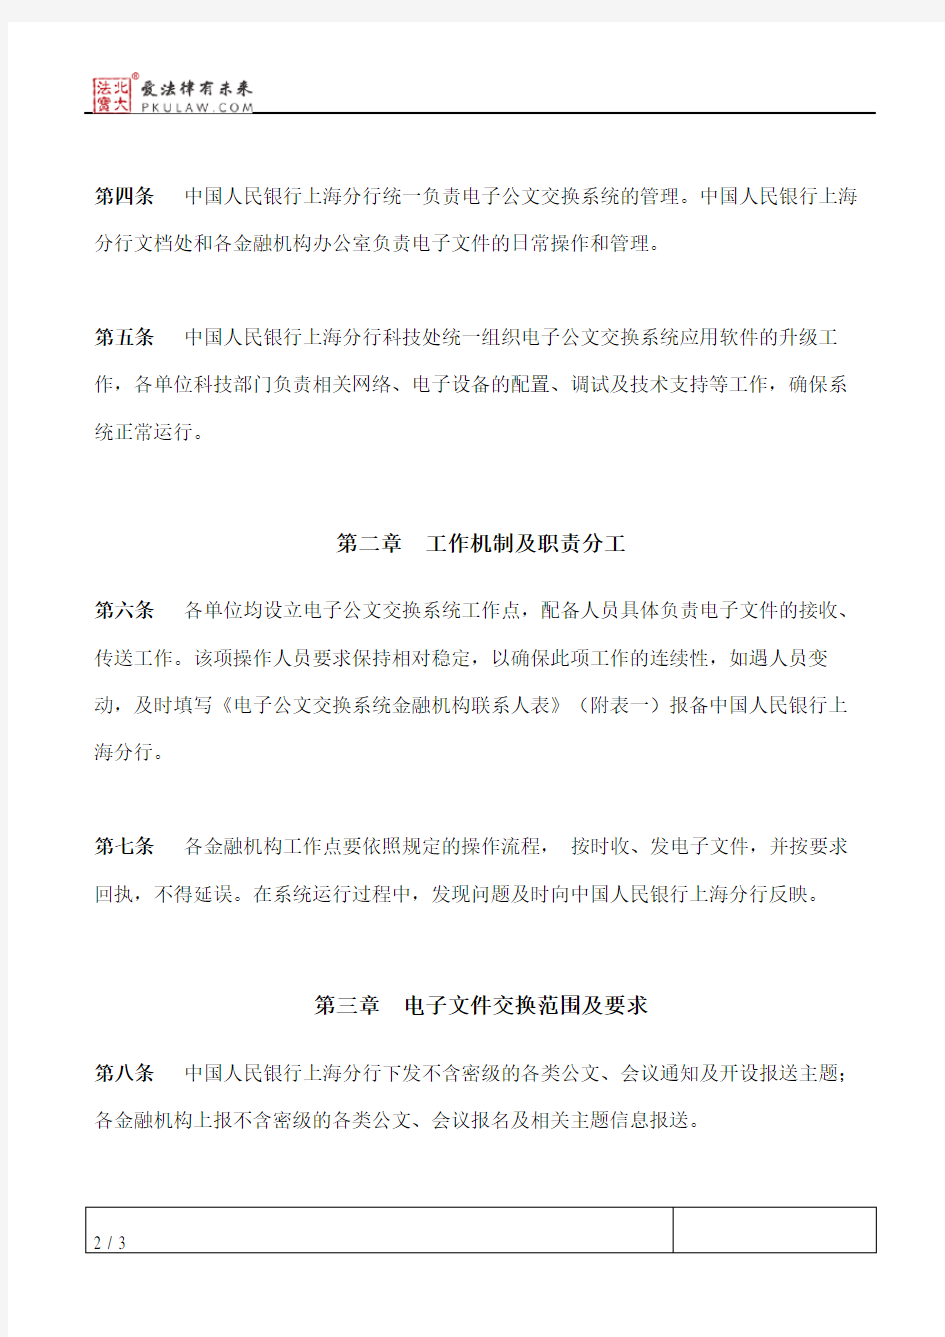 中国人民银行上海分行电子公文交换系统运行管理办法(试行)